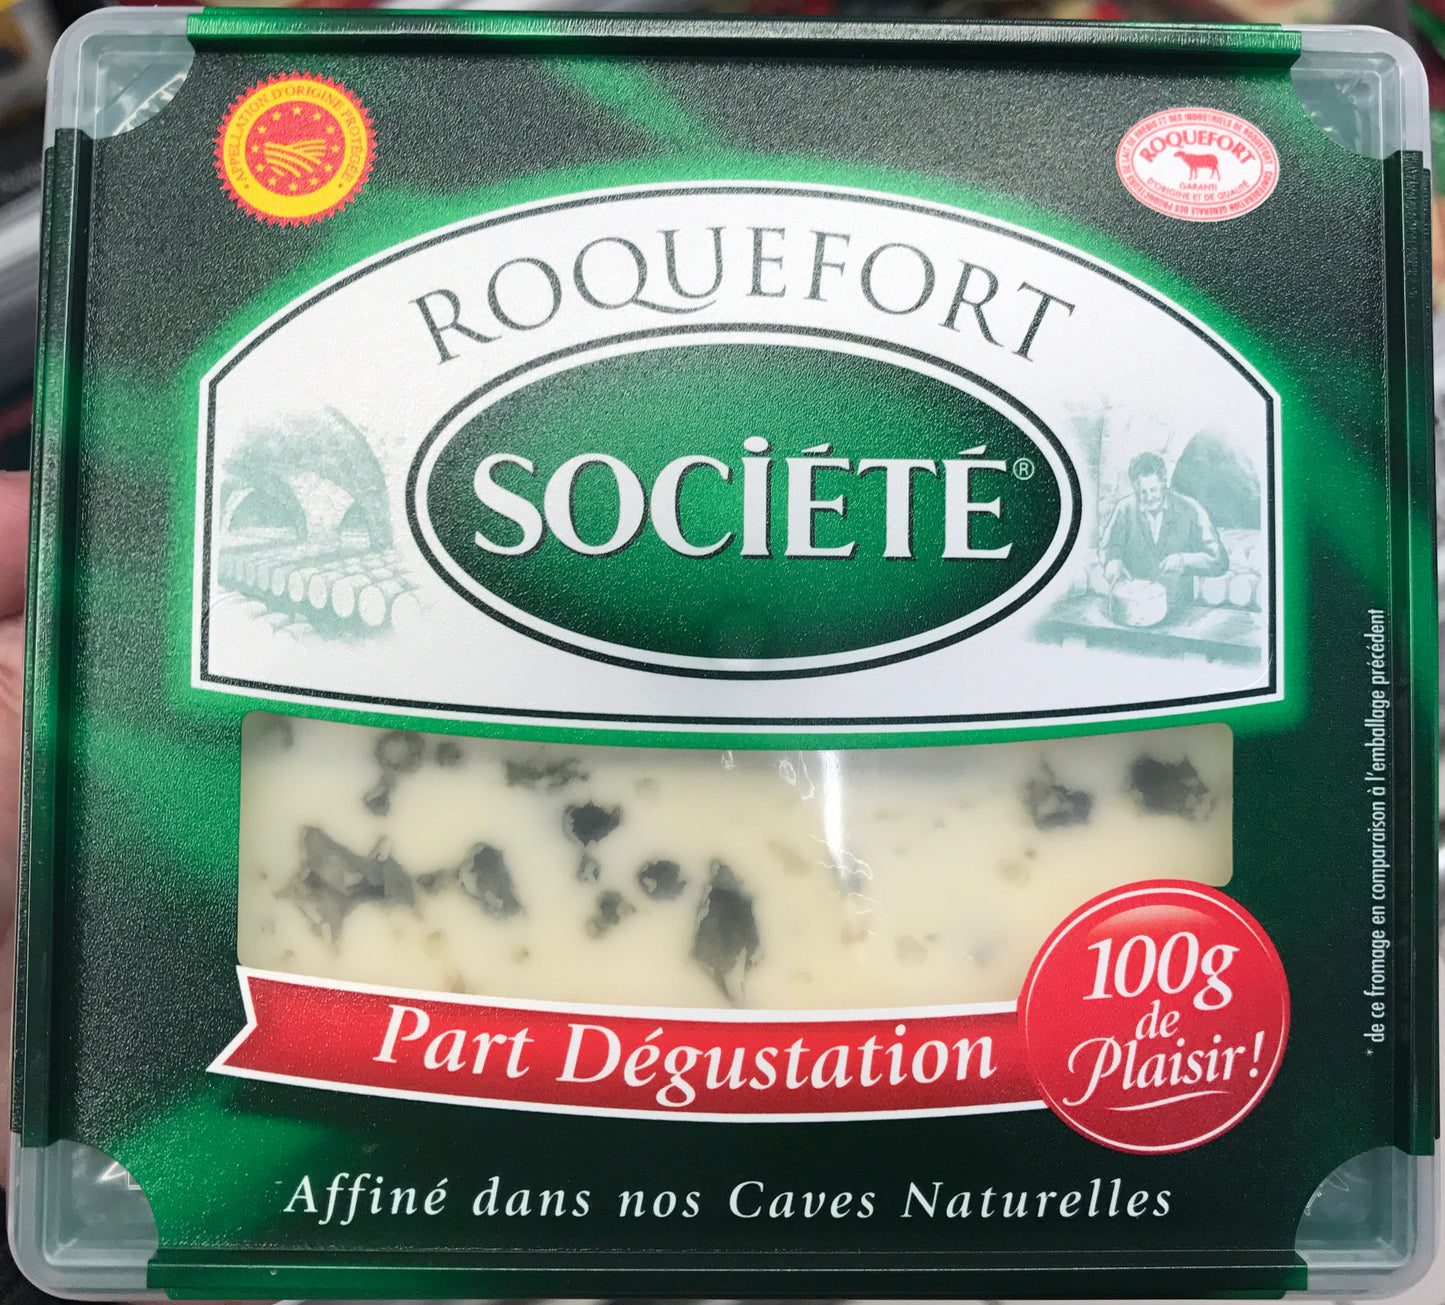 Societe Roquefort Blu Cheese